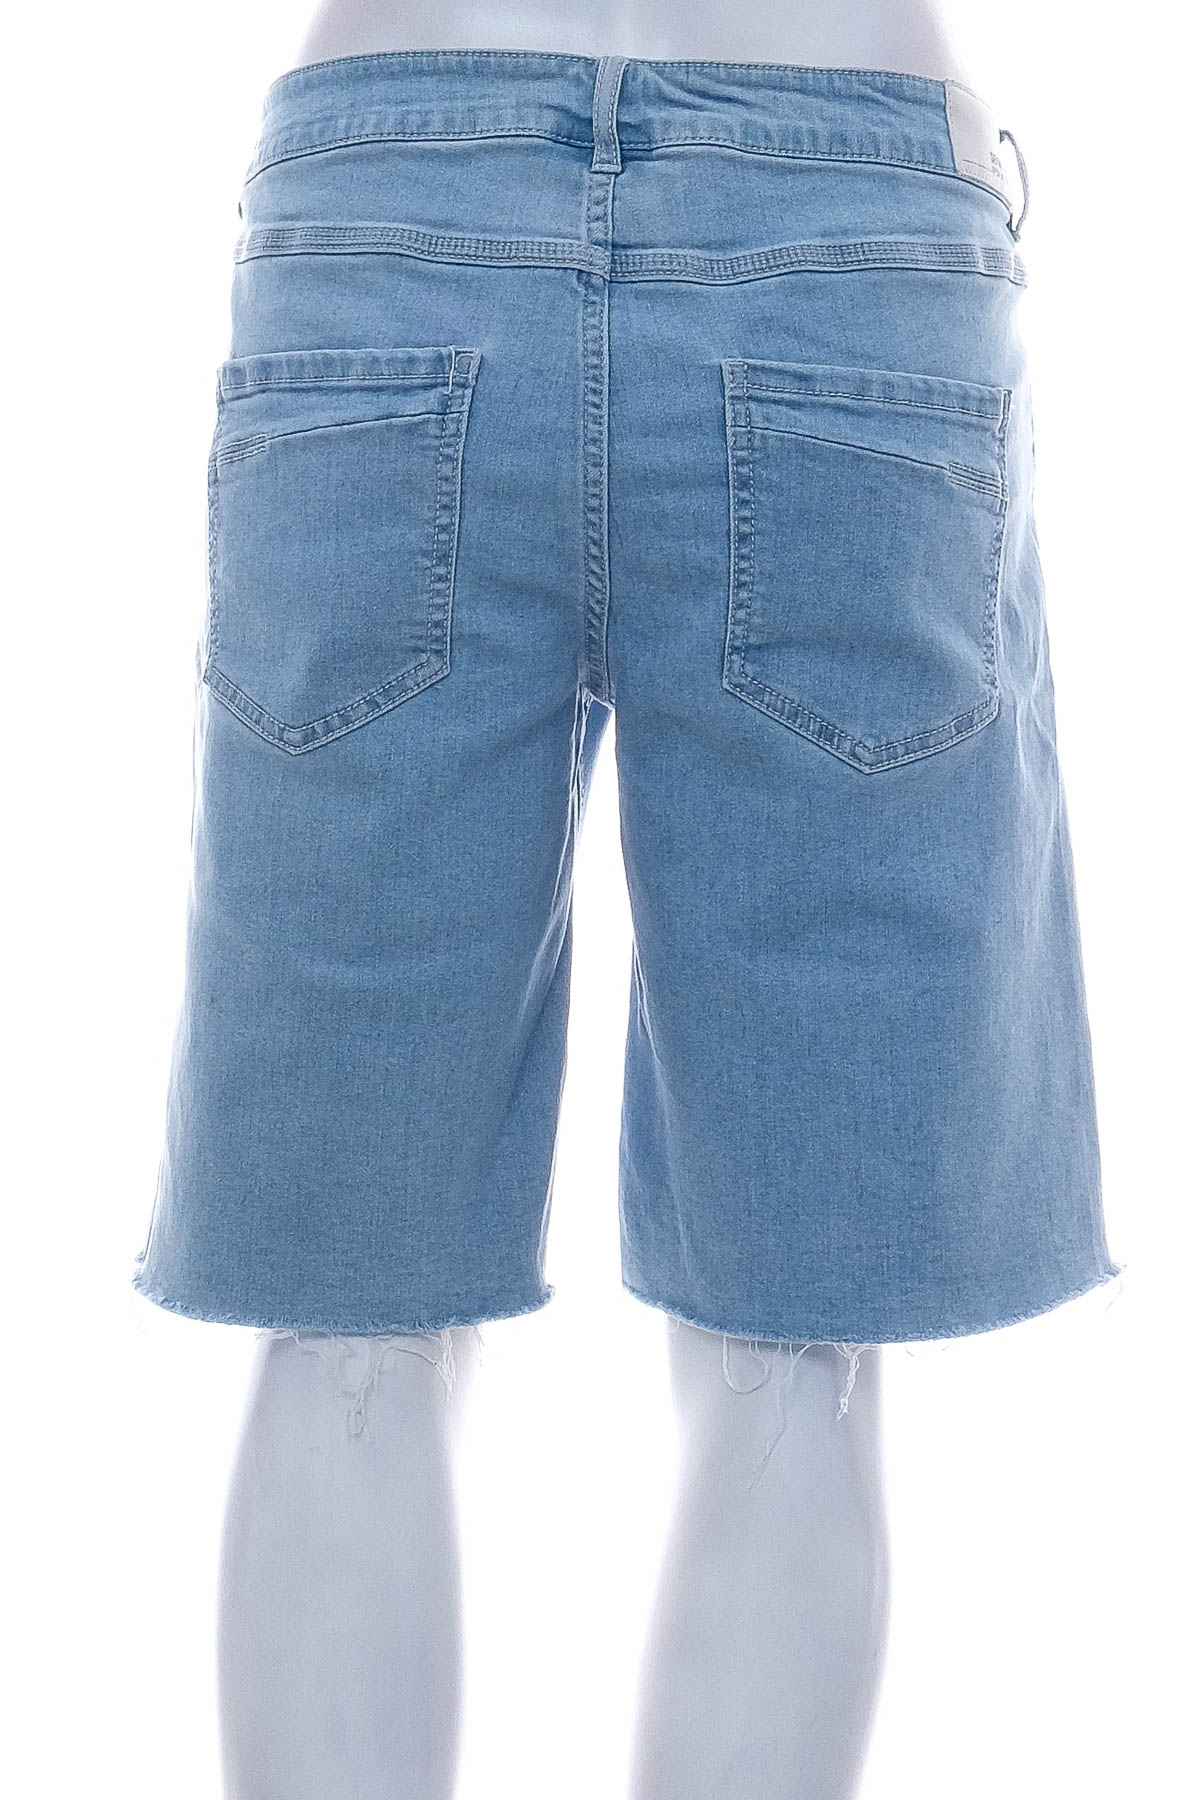 Γυναικείο κοντό παντελόνι - Denim 1982 - 1